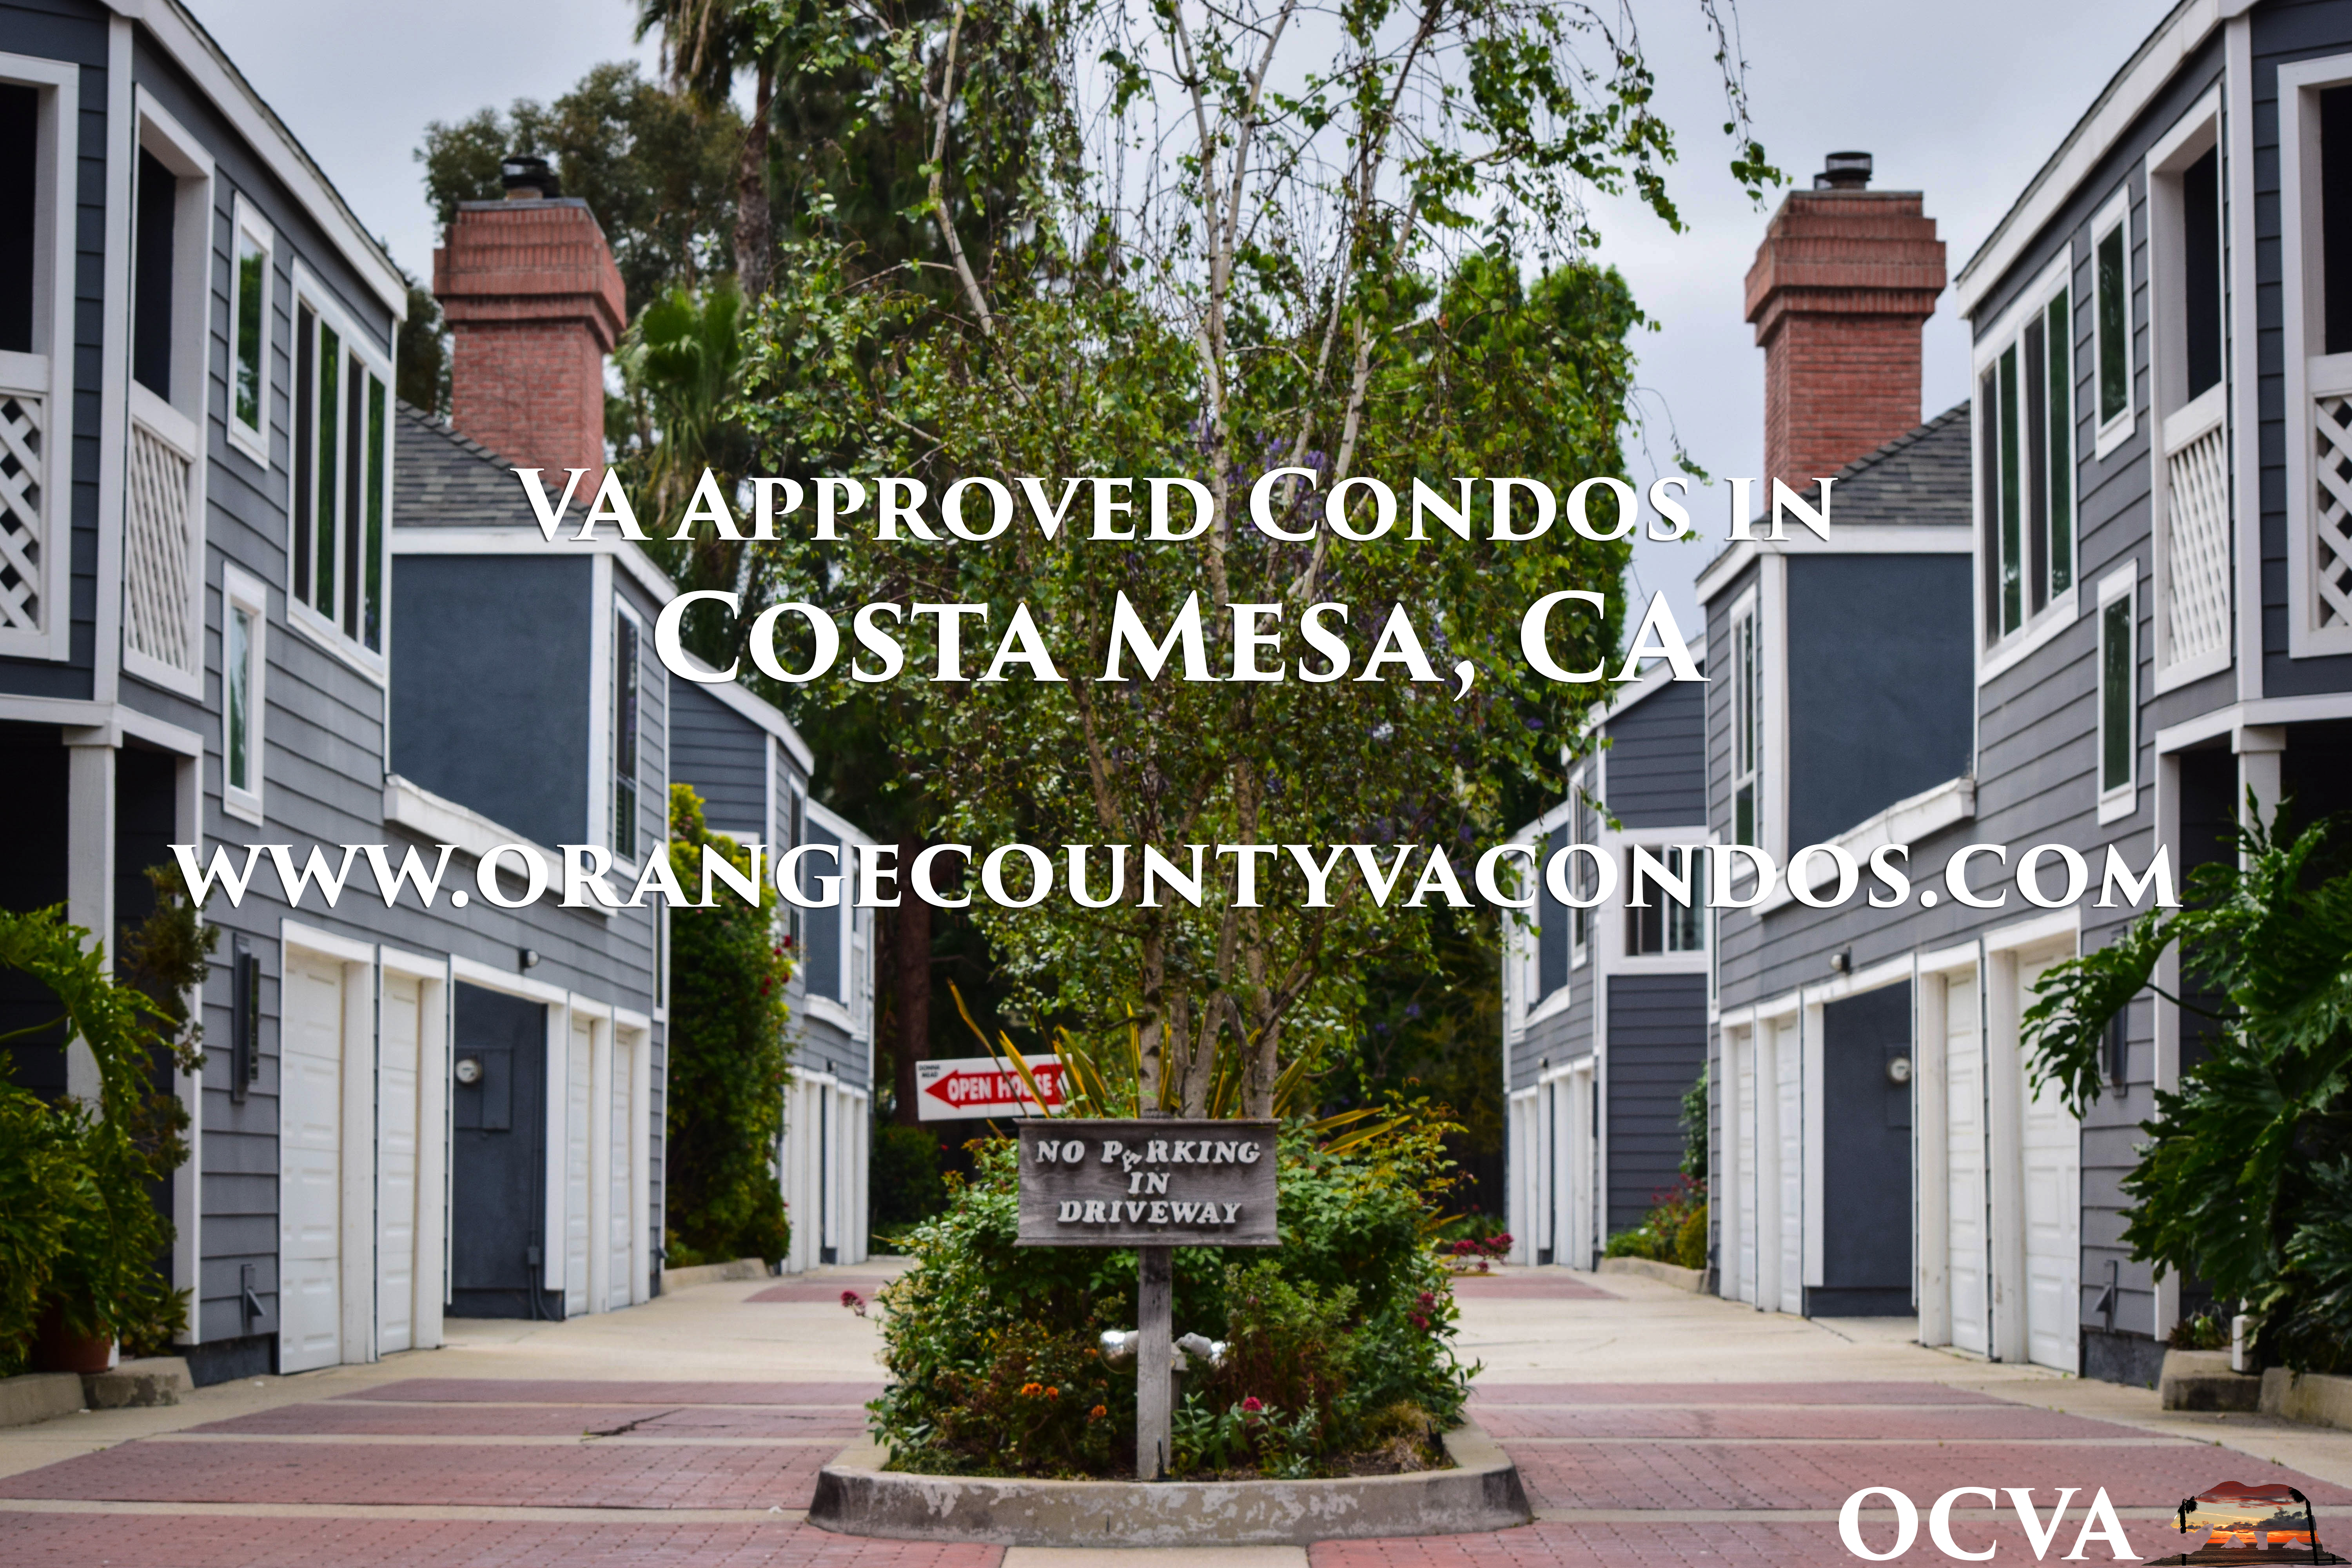 VA approved condo Costa Mesa